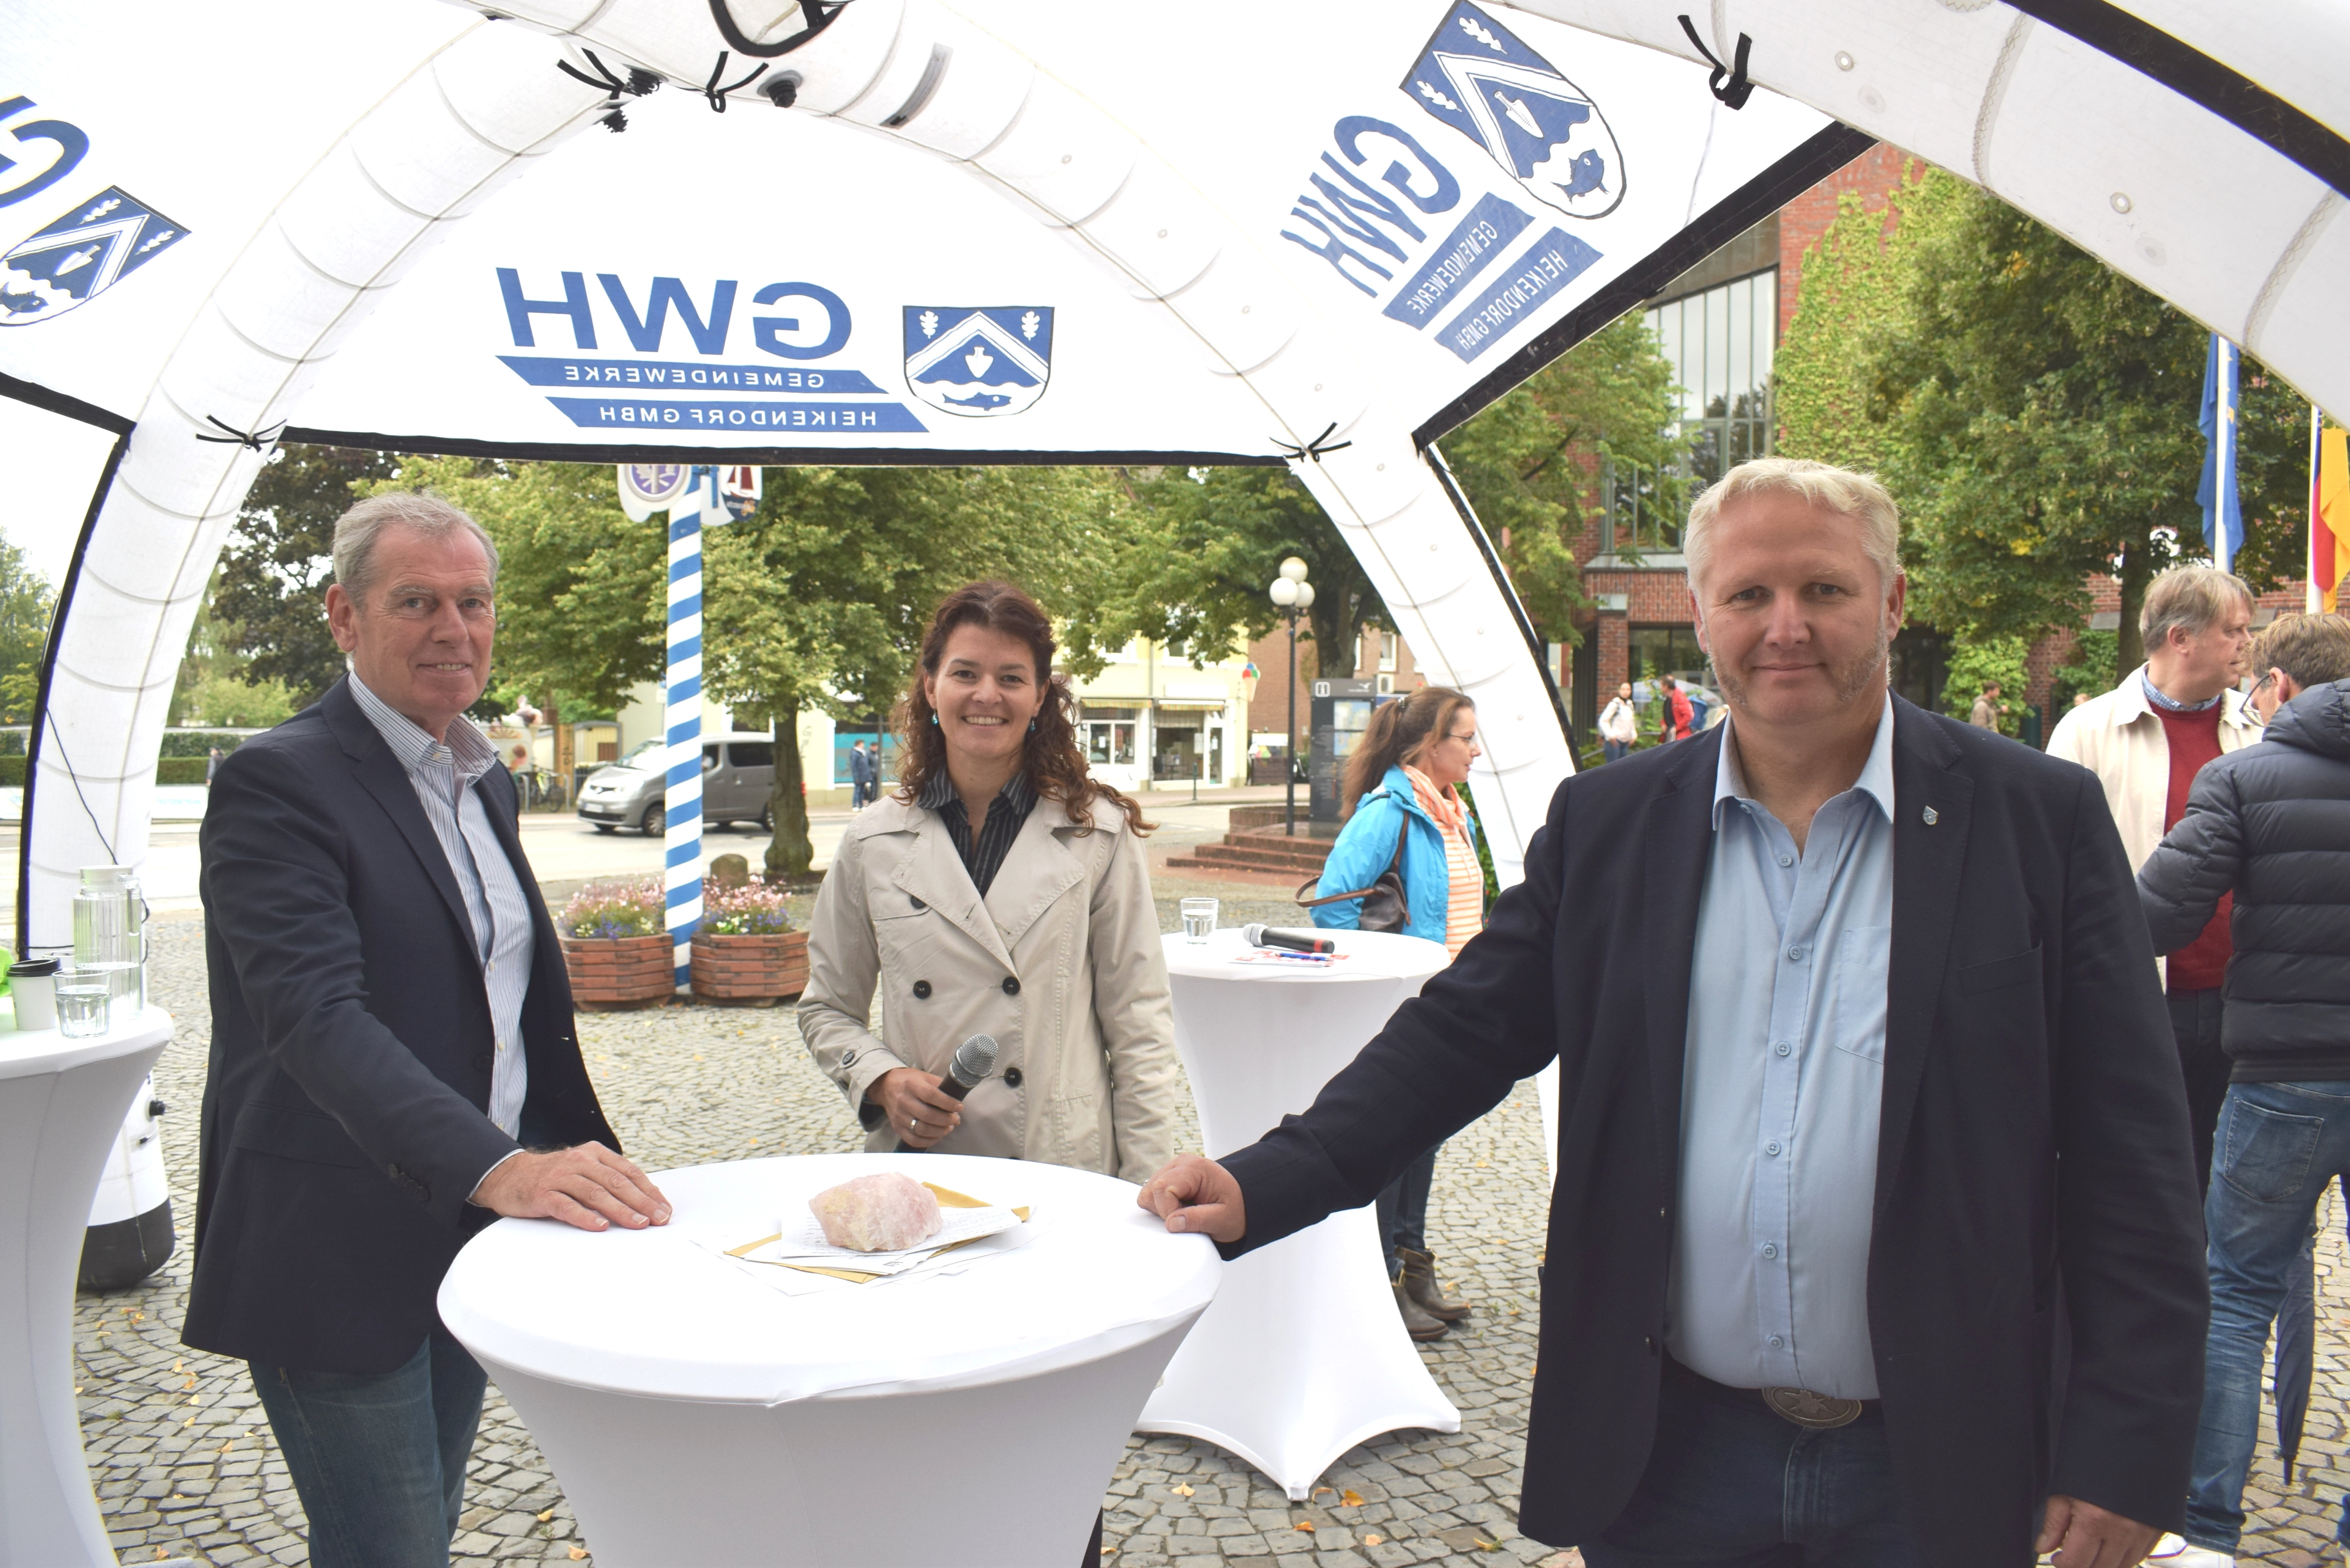 Die Bürgerrmeister-Kandidaten Paul Droßard (links) und Tade Peetz hier zusammen mit Amtsdirektorin und Moderatorin Juliane Bohrer.